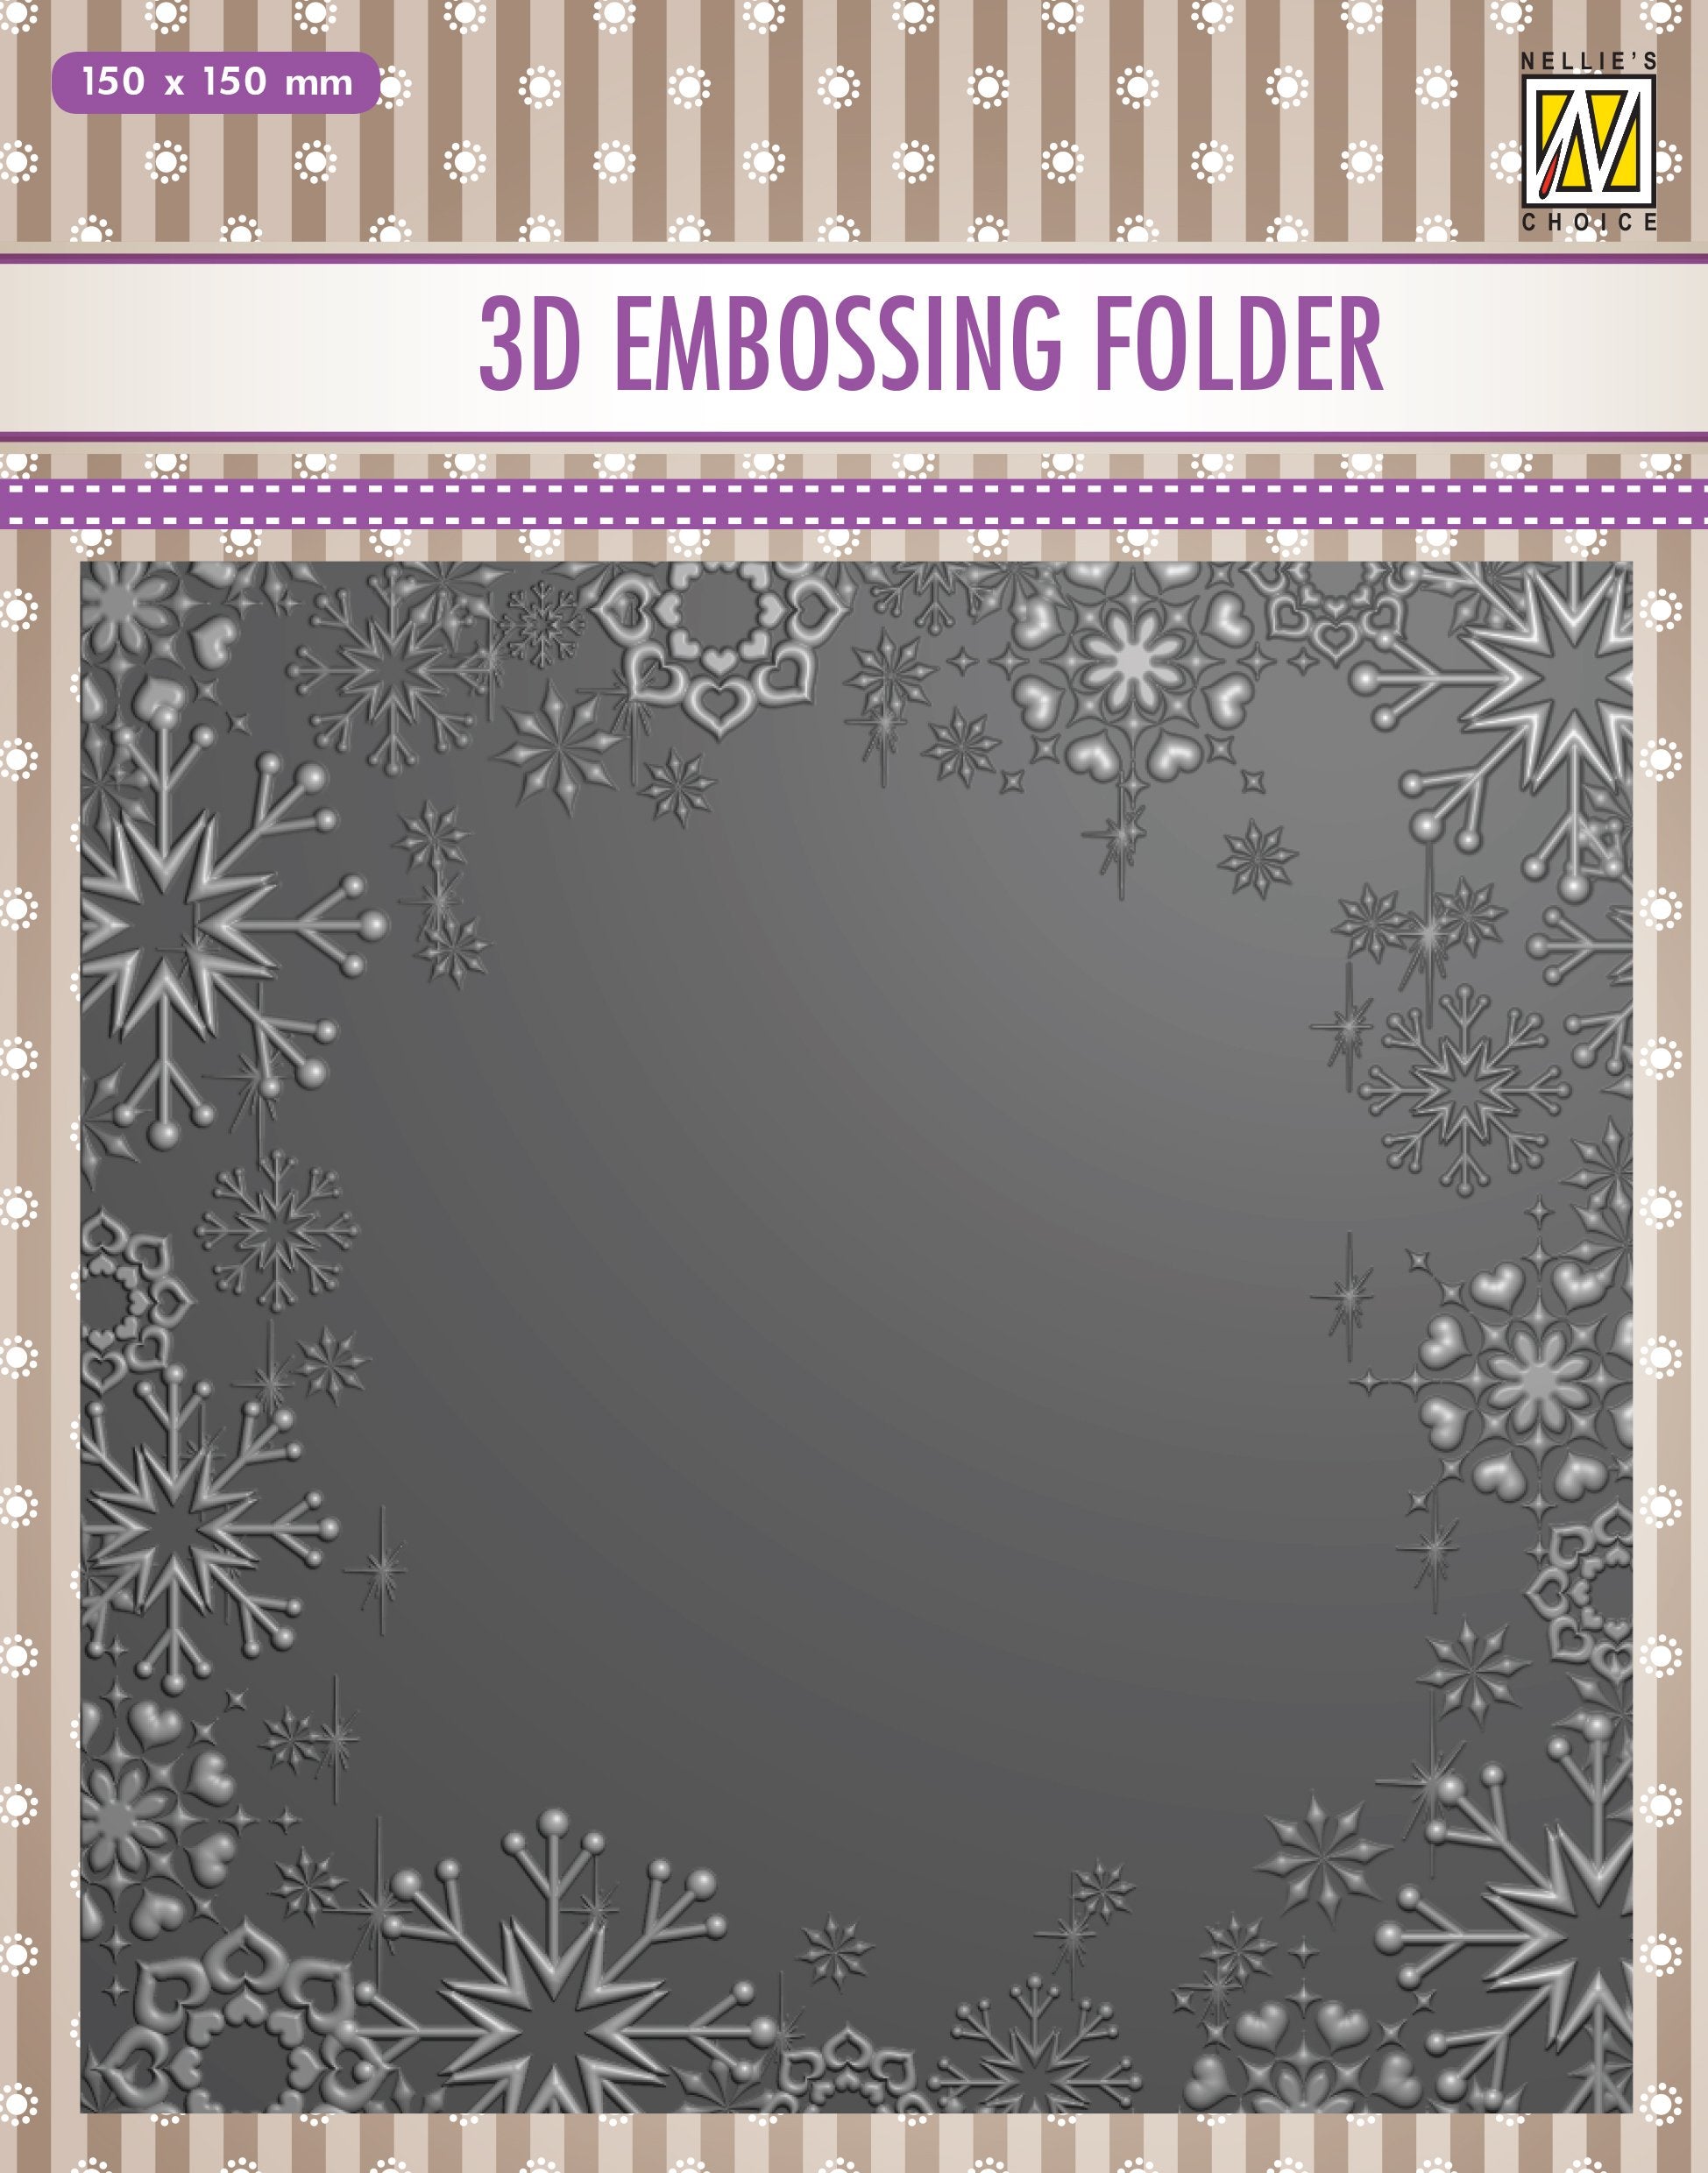 3D Embossing Folder -  Snowflake Frame